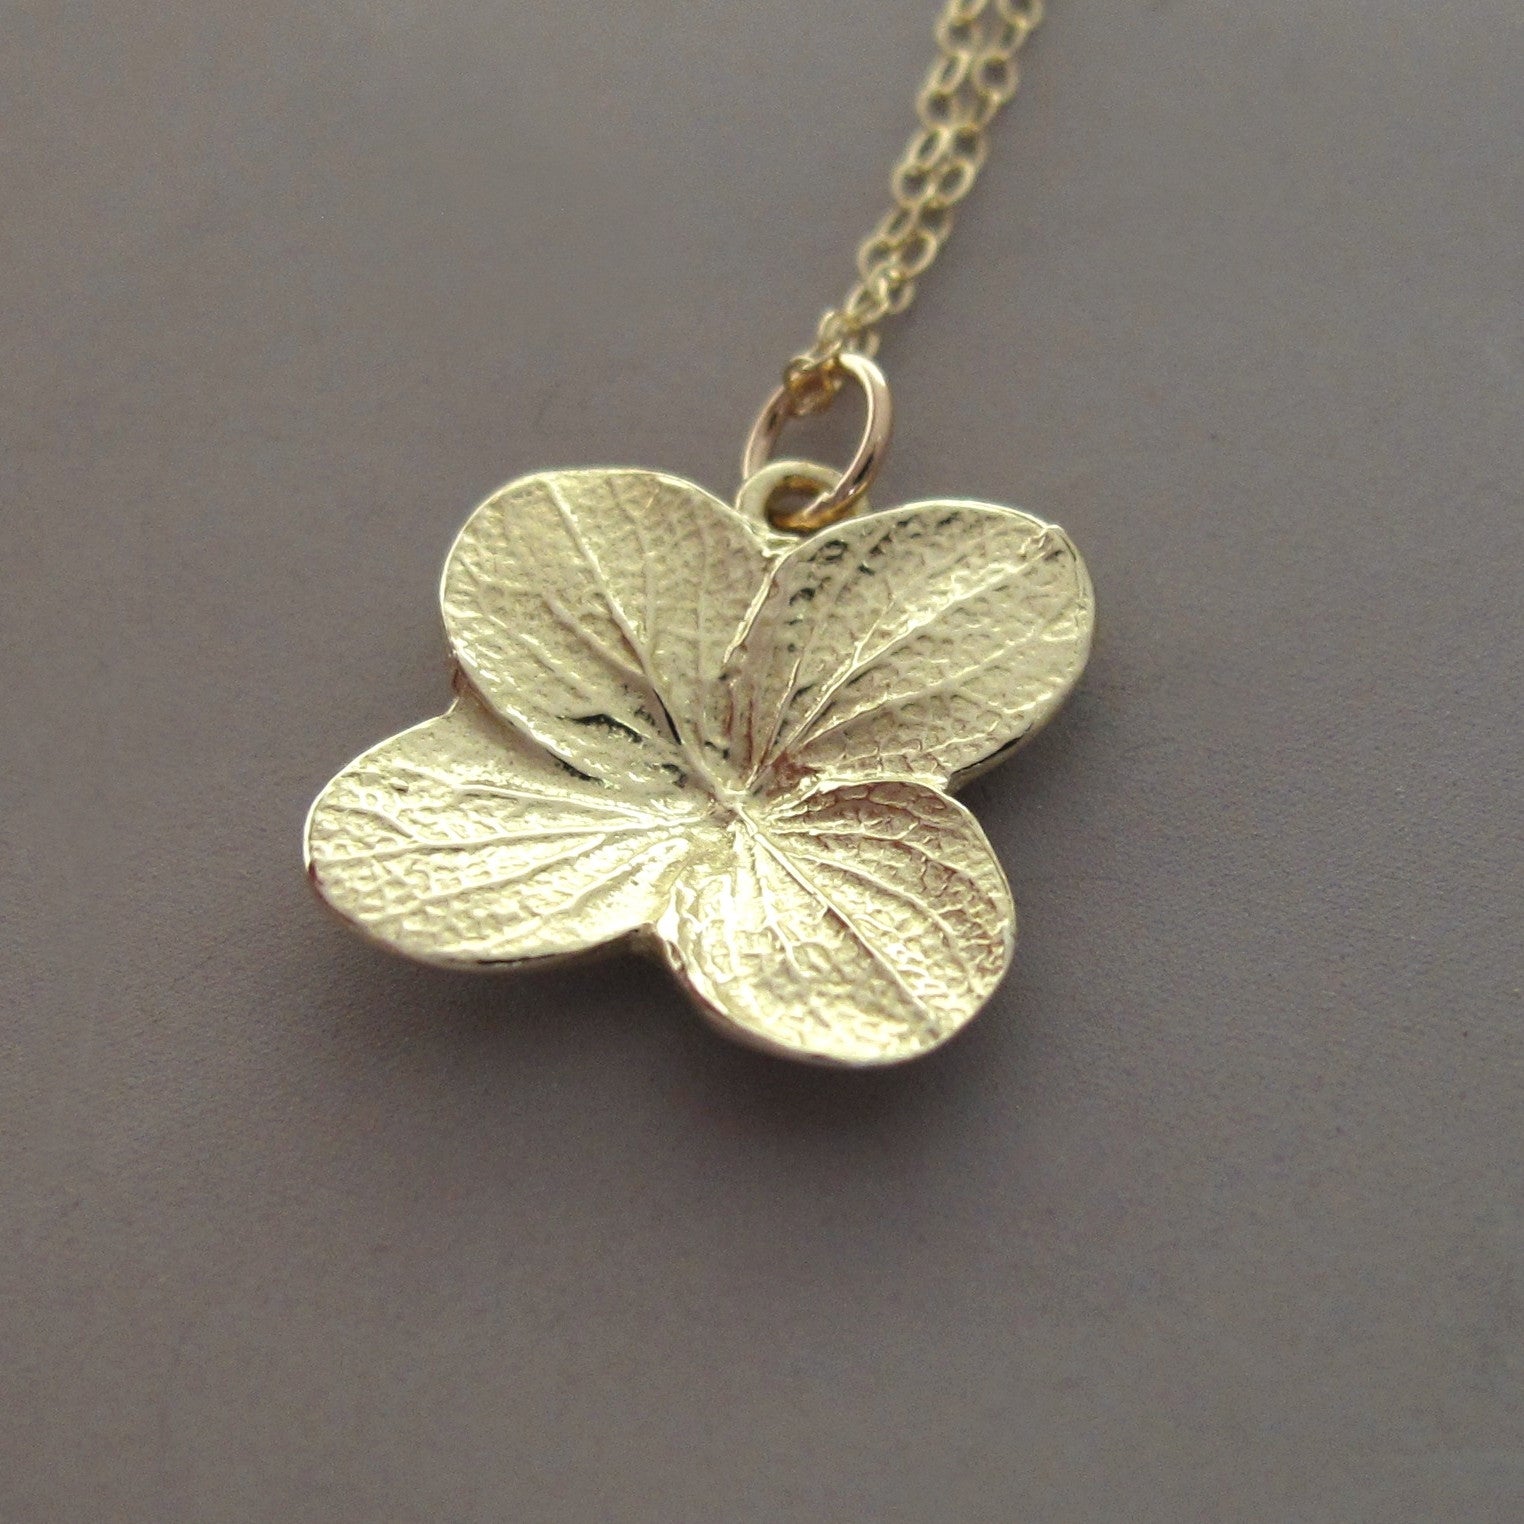 Hydrangea Flower Necklace in 14k Yellow Gold | Elizabeth Scott Jewelry